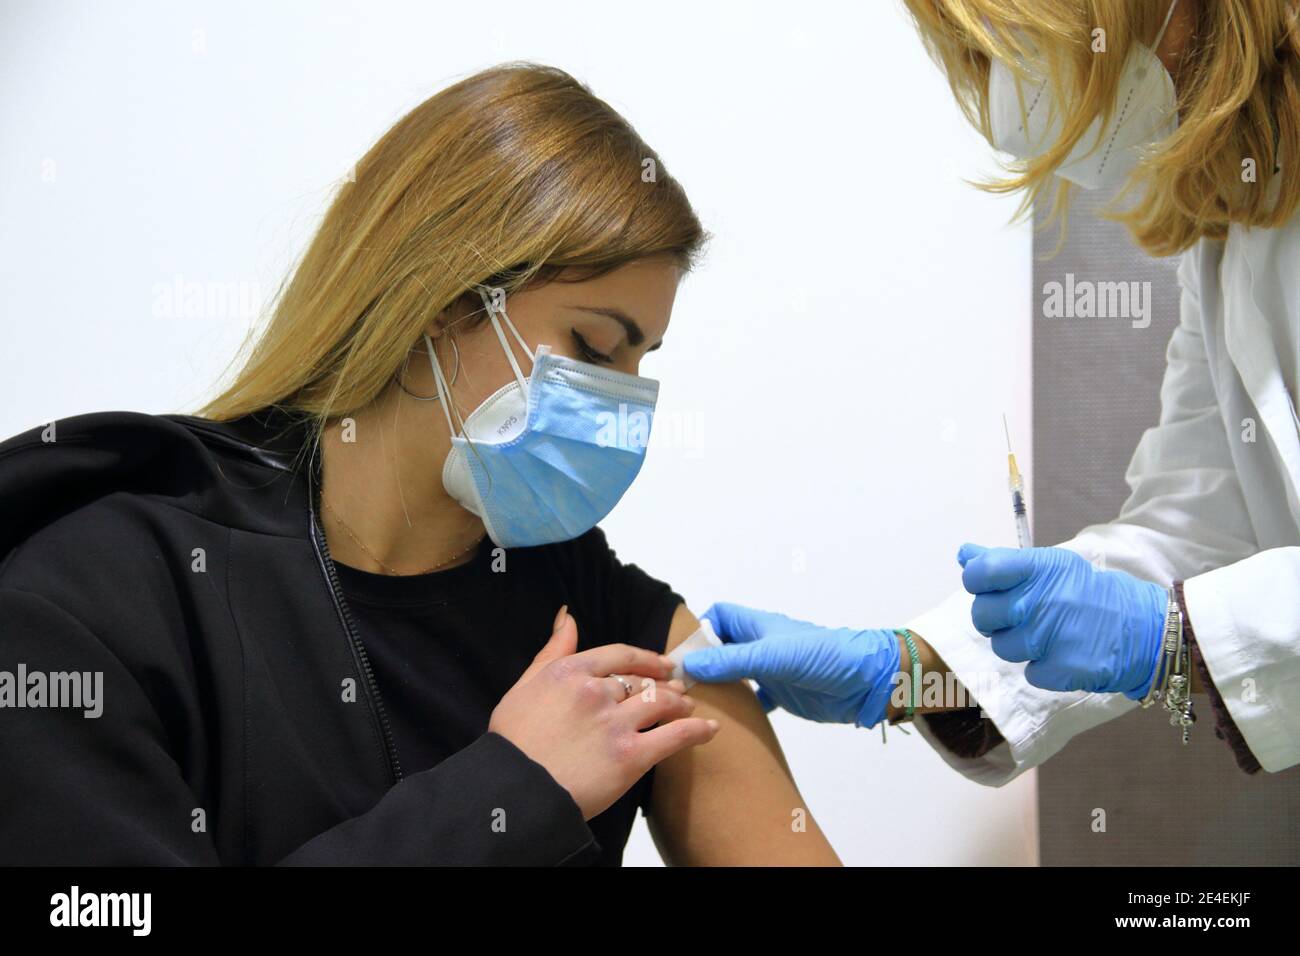 La Società sanitaria locale 1 Napoli Centro ha istituito, un Centro di vaccinazione contro Covid-19 .infermiere e dottore al lavoro. Foto Stock